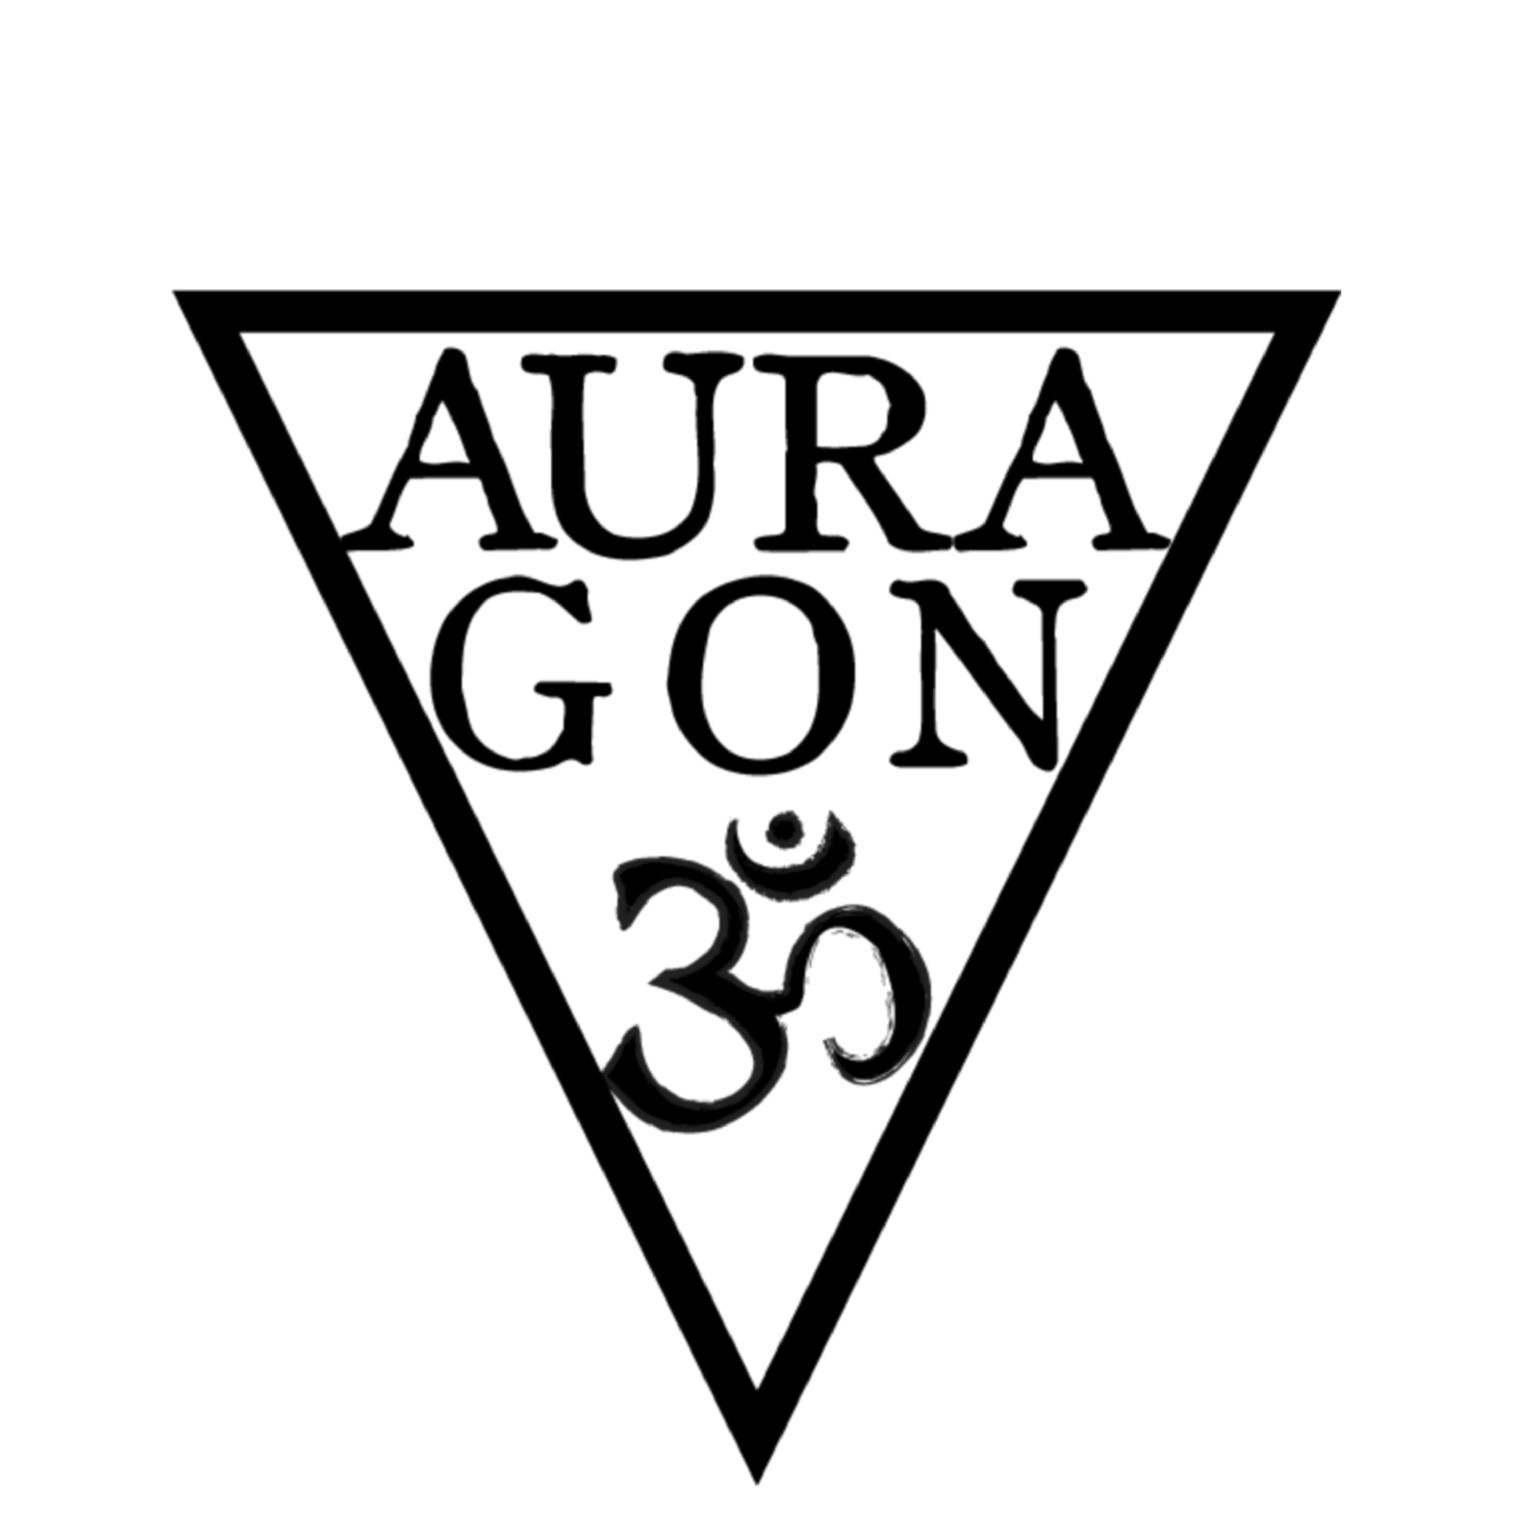 Auragon's images